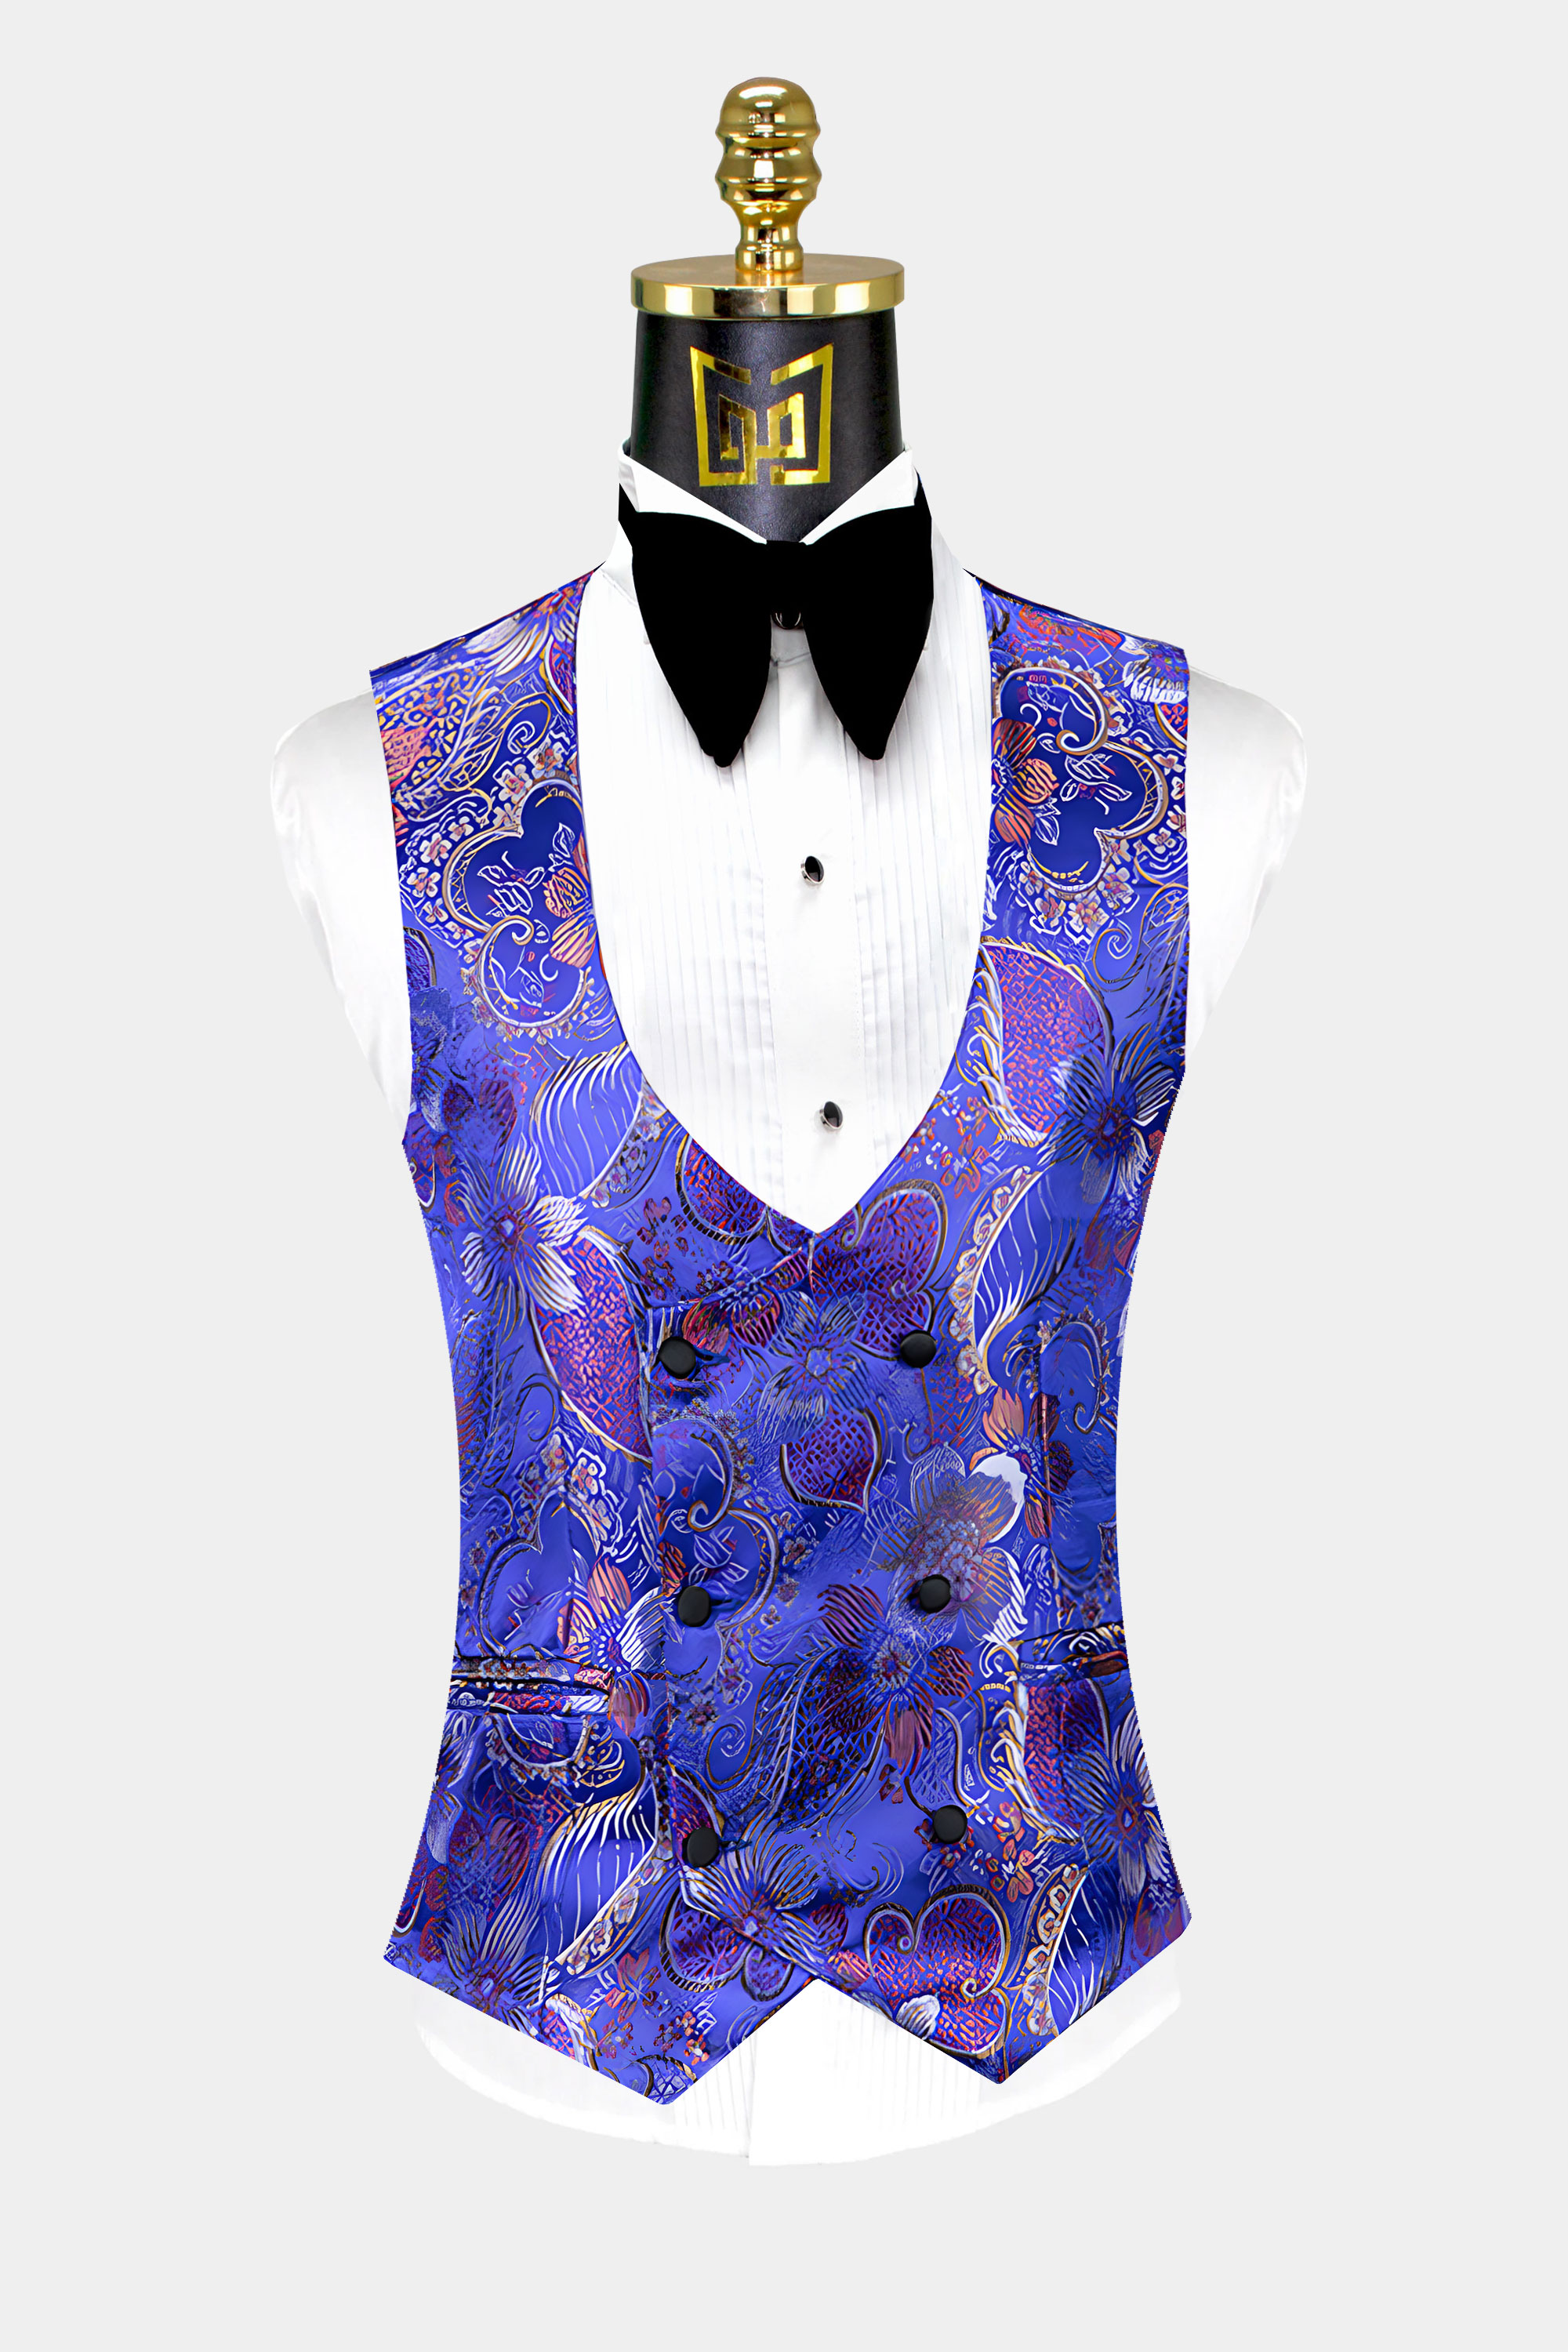 Blue-Purple-Tuxedo-Vest-from-Gentlemansguru.com